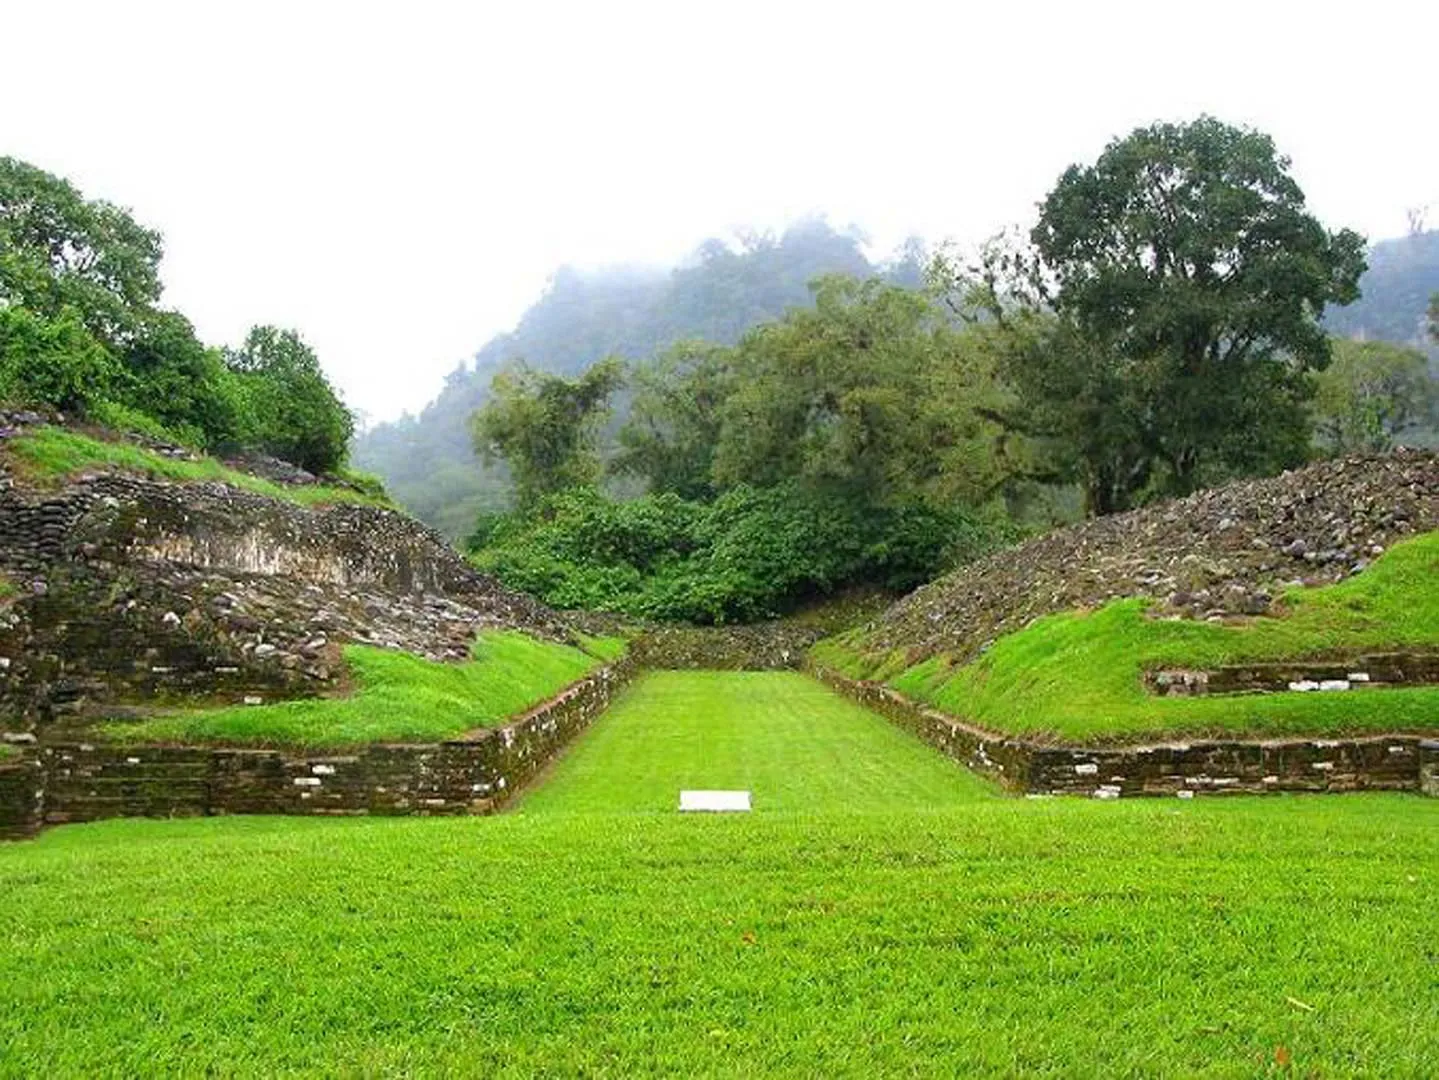 Nota sobre Zona arqueológica de Tres Zapotes, Veracruz